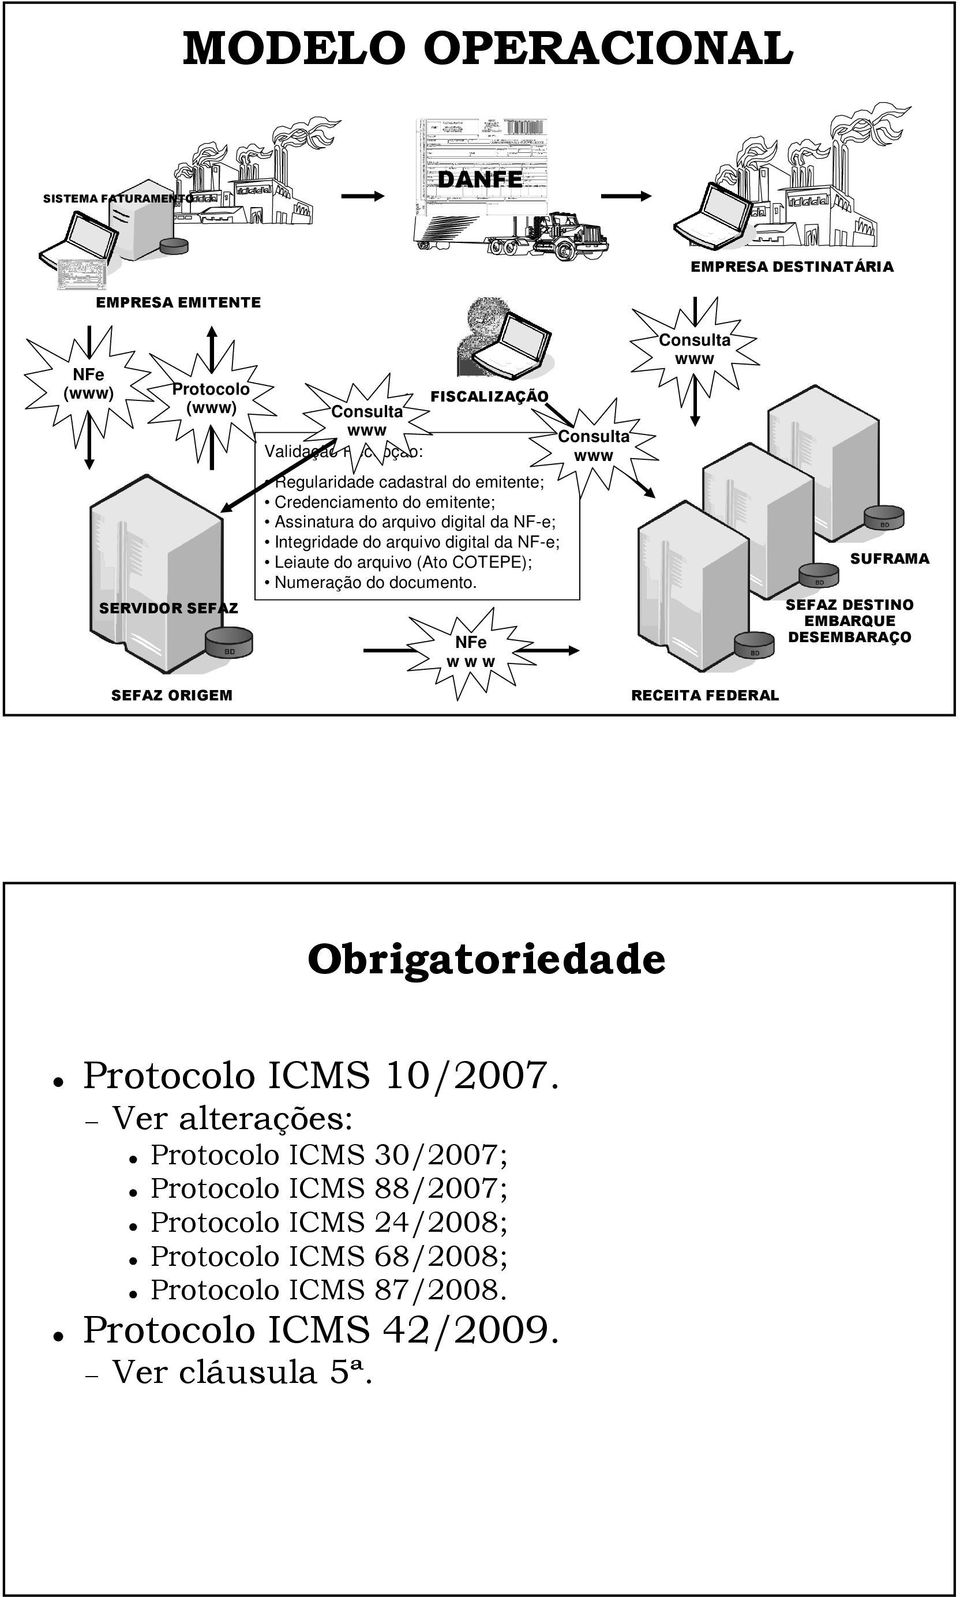 documento. w w w Consulta www Consulta www RECEITA FEDERAL SUFRAMA SEFAZ DESTINO EMBARQUE DESEMBARAÇO Obrigatoriedade Protocolo ICMS 10/2007.